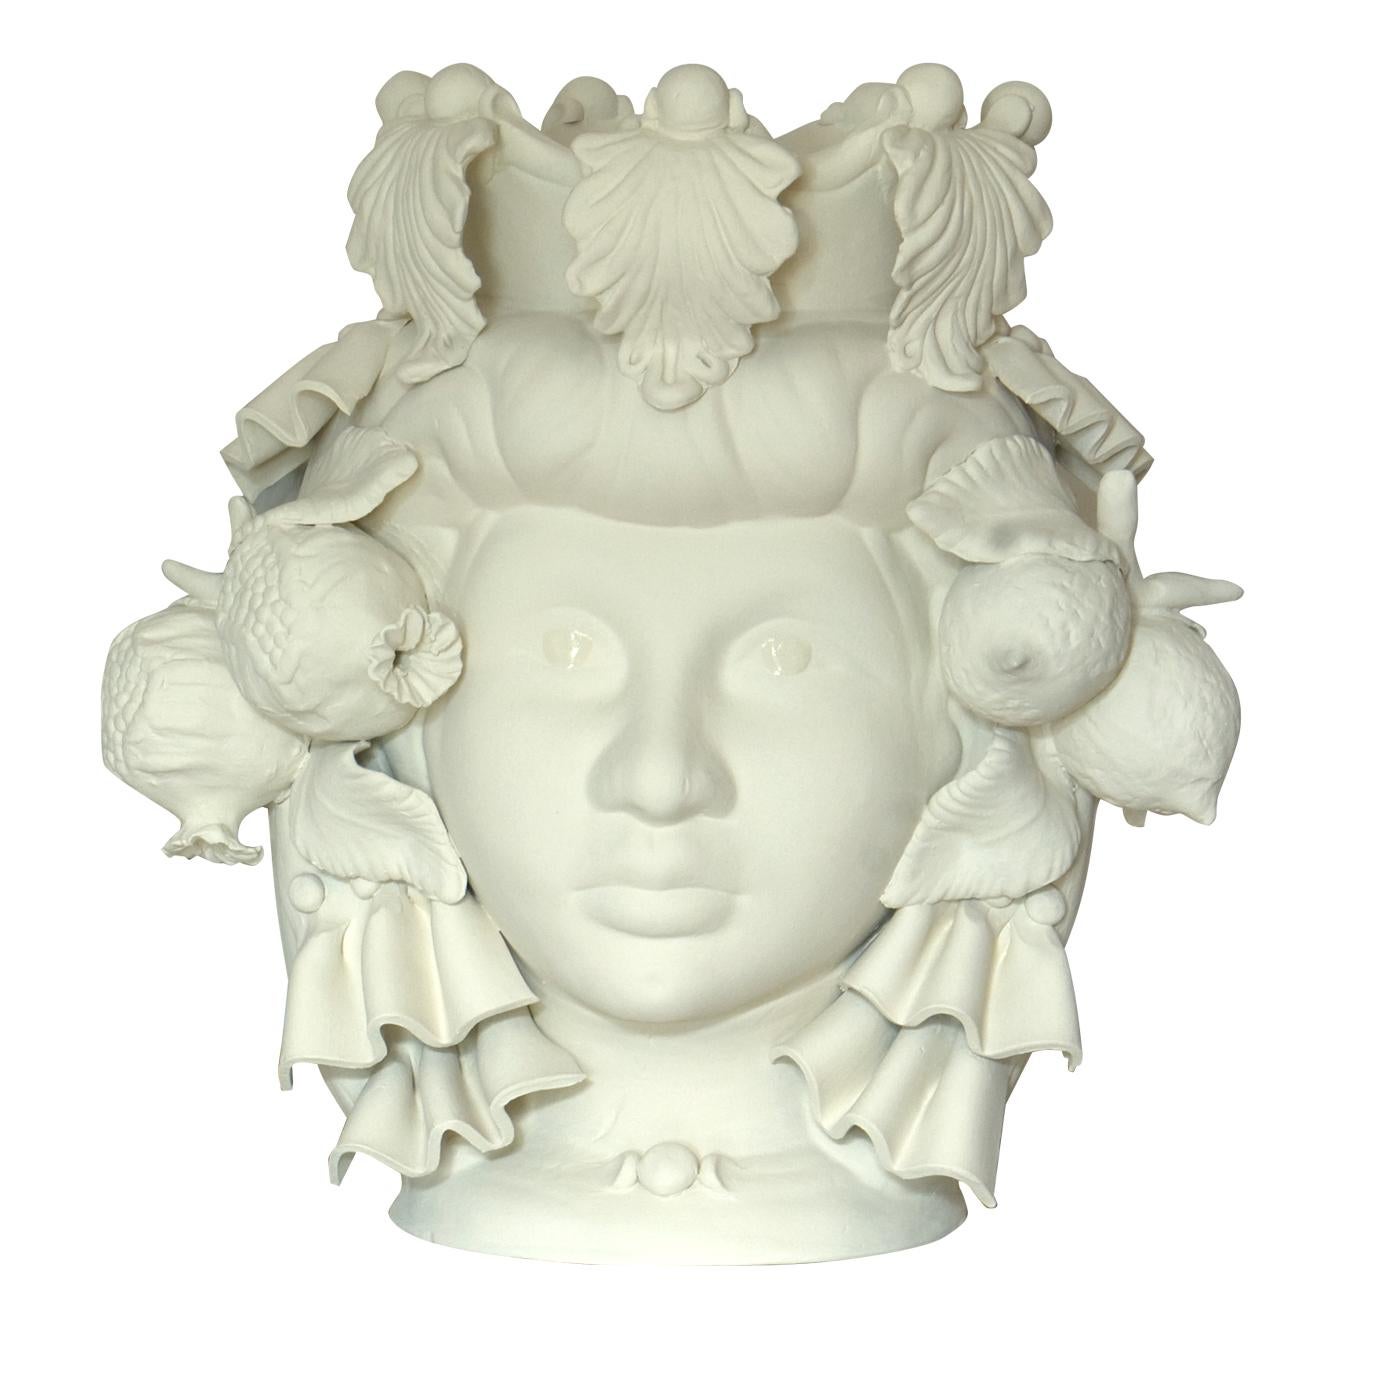 Ce vase anthropomorphe est entièrement fabriqué à la main et peint dans une teinte monochrome ivoire mat, riche en pigments naturels et en liants résineux qui donnent une profondeur de couleur intense. Seuls les yeux sont glacés pour qu'ils